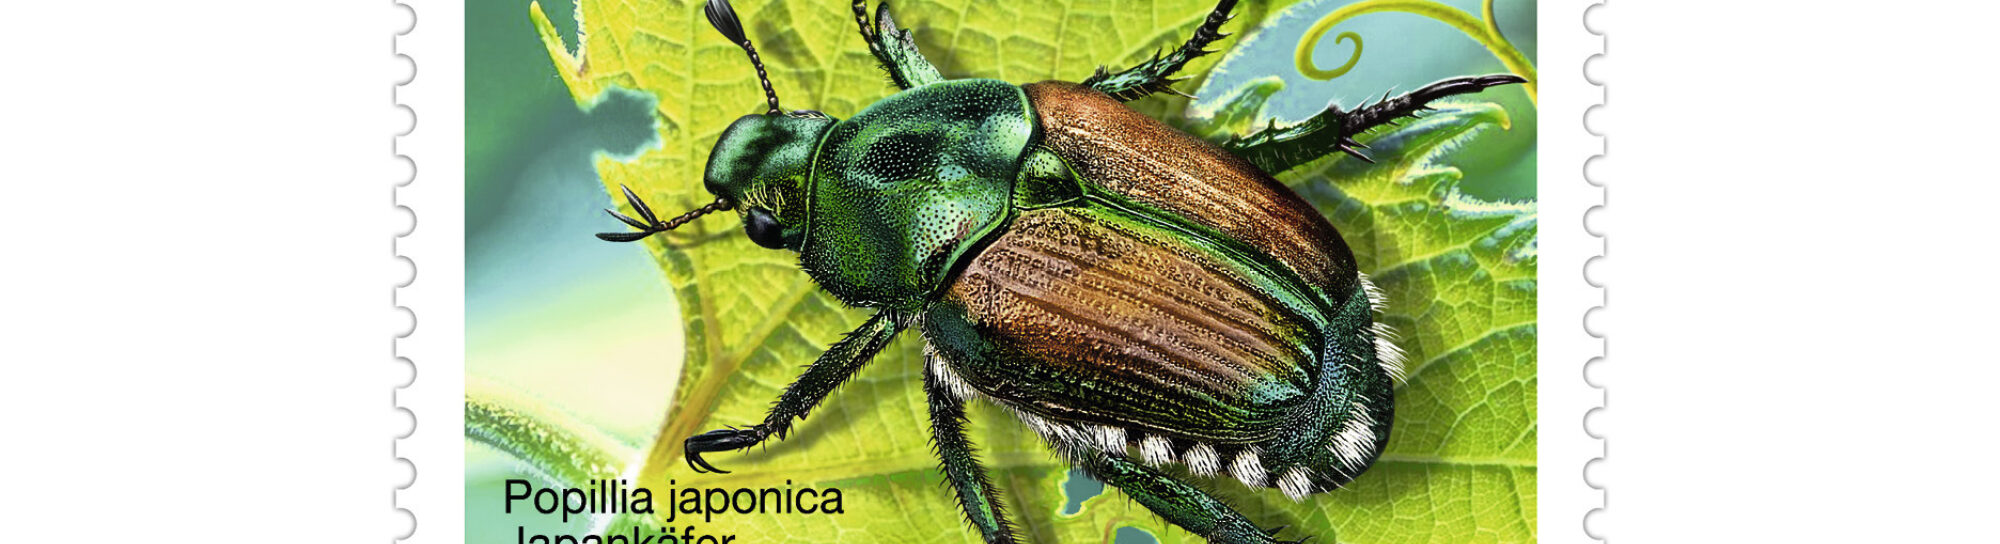 Le scarabée du Japon, grand voyageur, menace les plantes indigènes